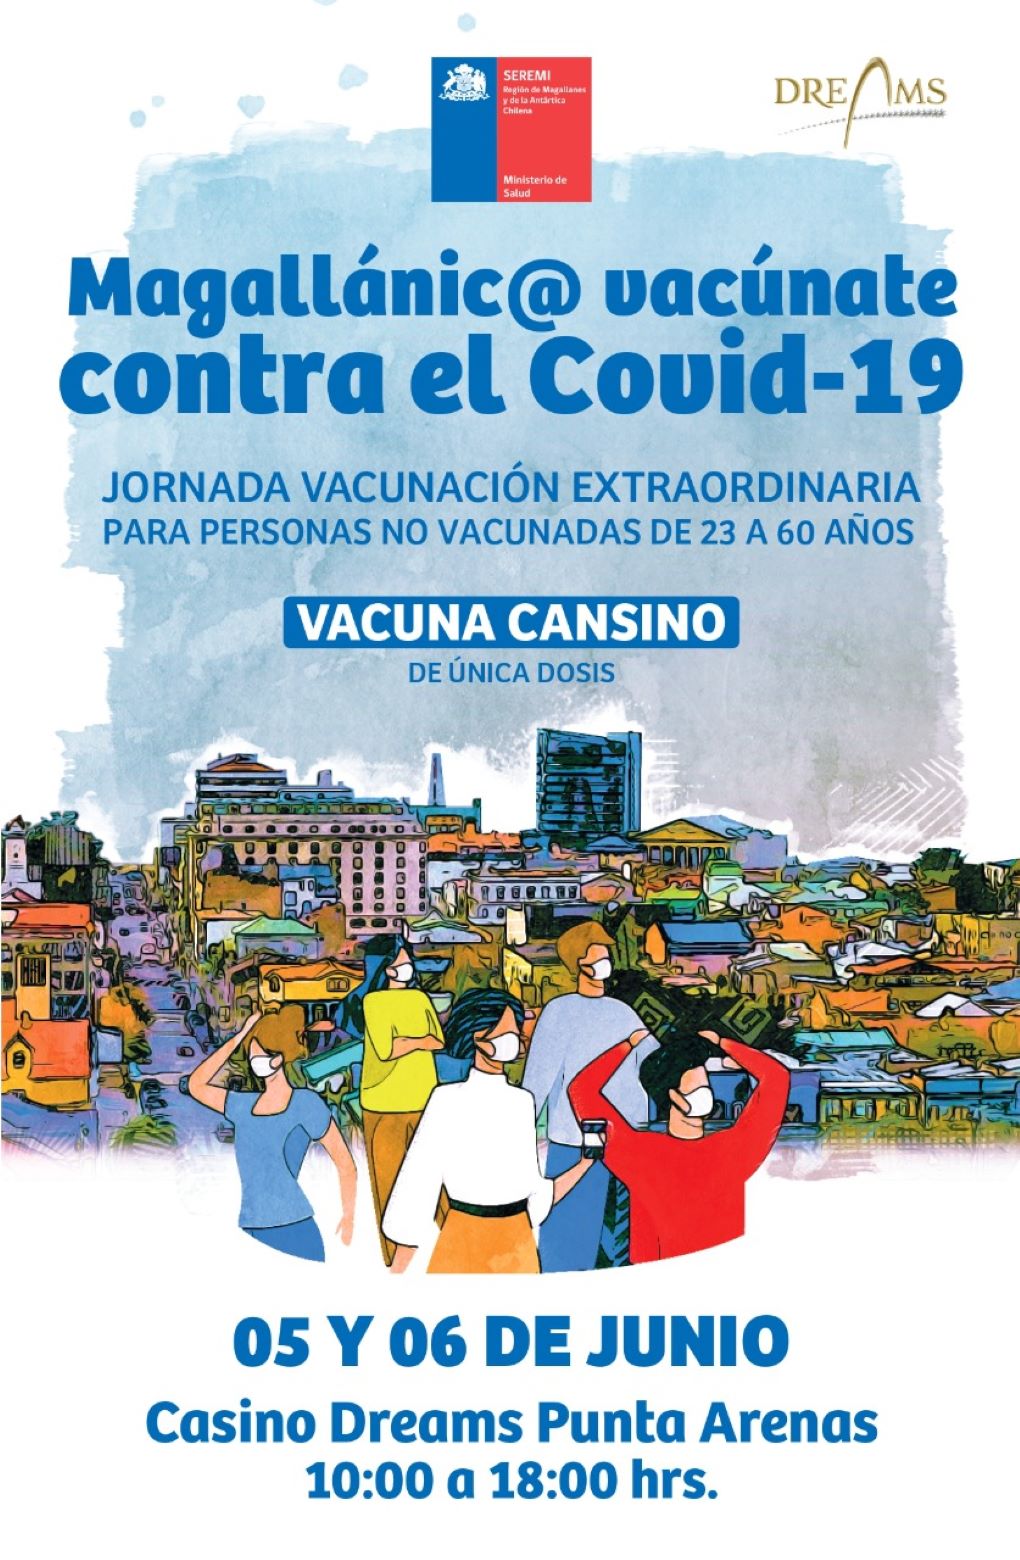 Jornada extraordinaria de vacunación se efectuará en el Casino Dreams de Punta Arenas